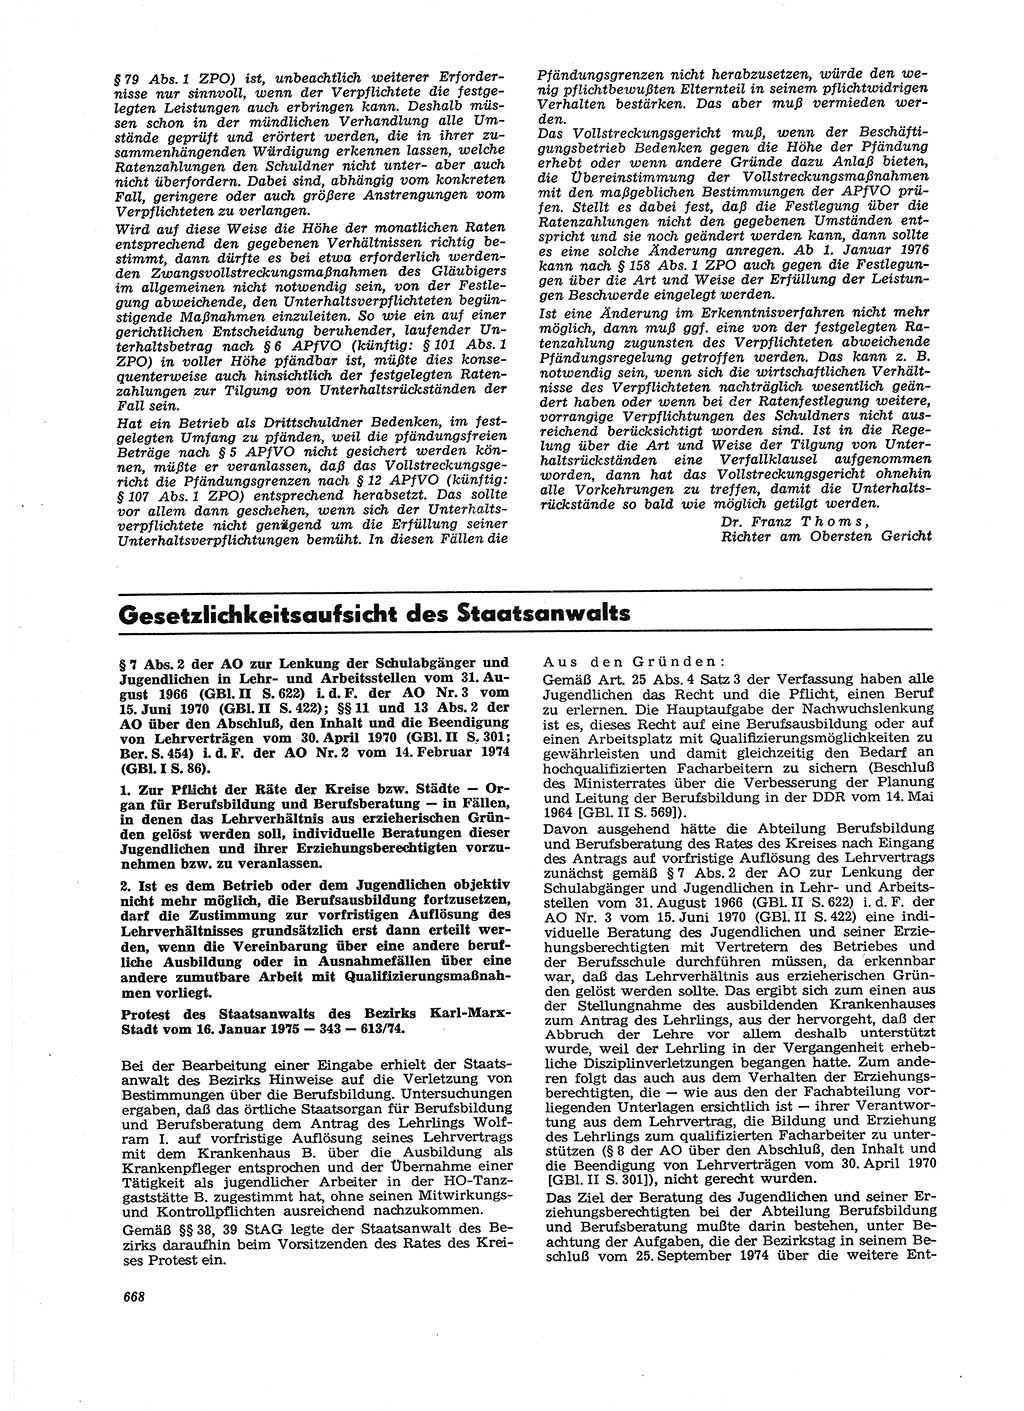 Neue Justiz (NJ), Zeitschrift für Recht und Rechtswissenschaft [Deutsche Demokratische Republik (DDR)], 29. Jahrgang 1975, Seite 668 (NJ DDR 1975, S. 668)